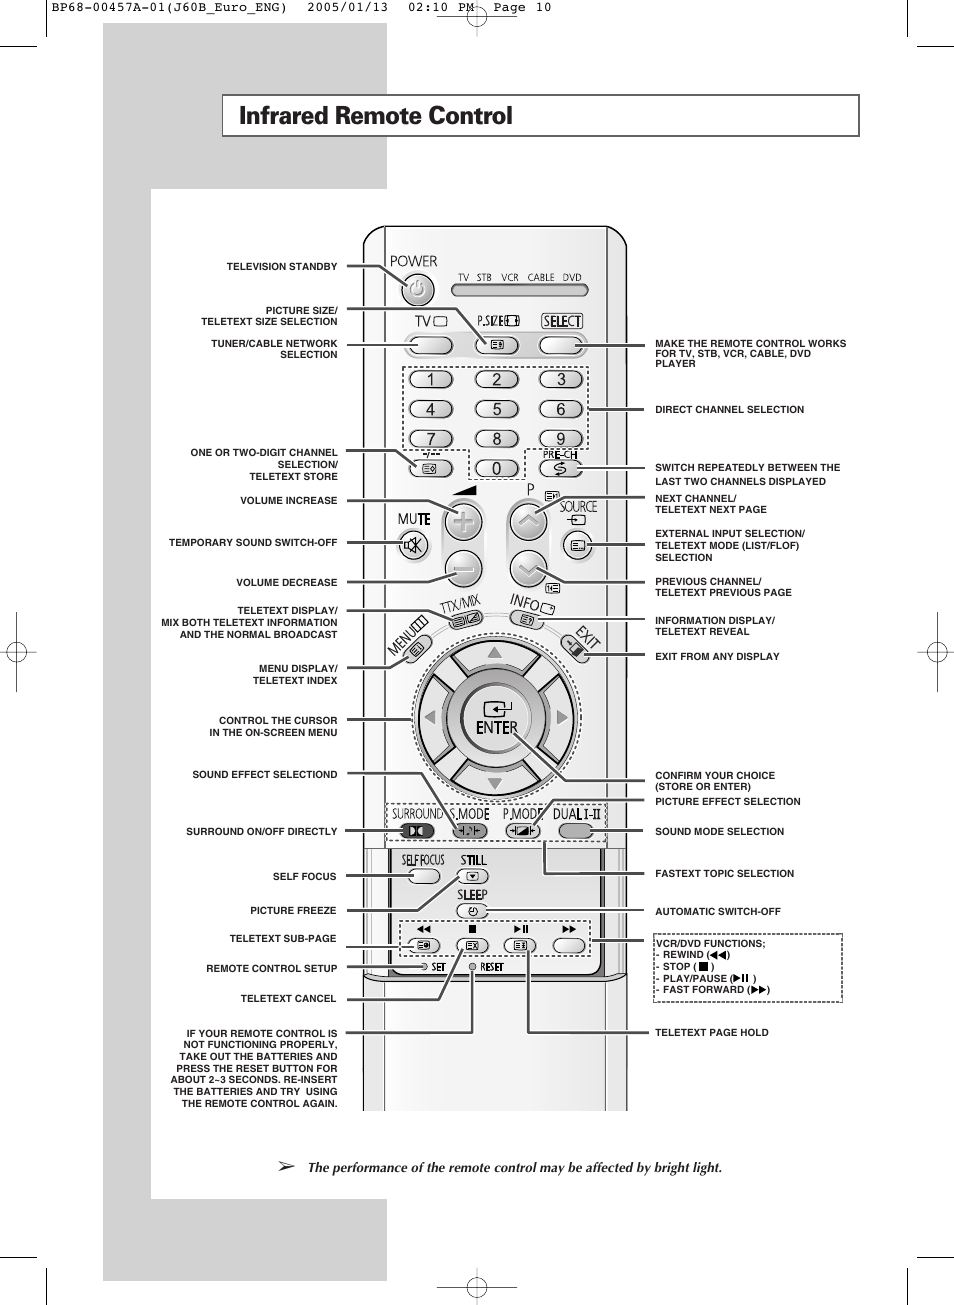 Samsung SP-43R1HL User Manual | 7 pages